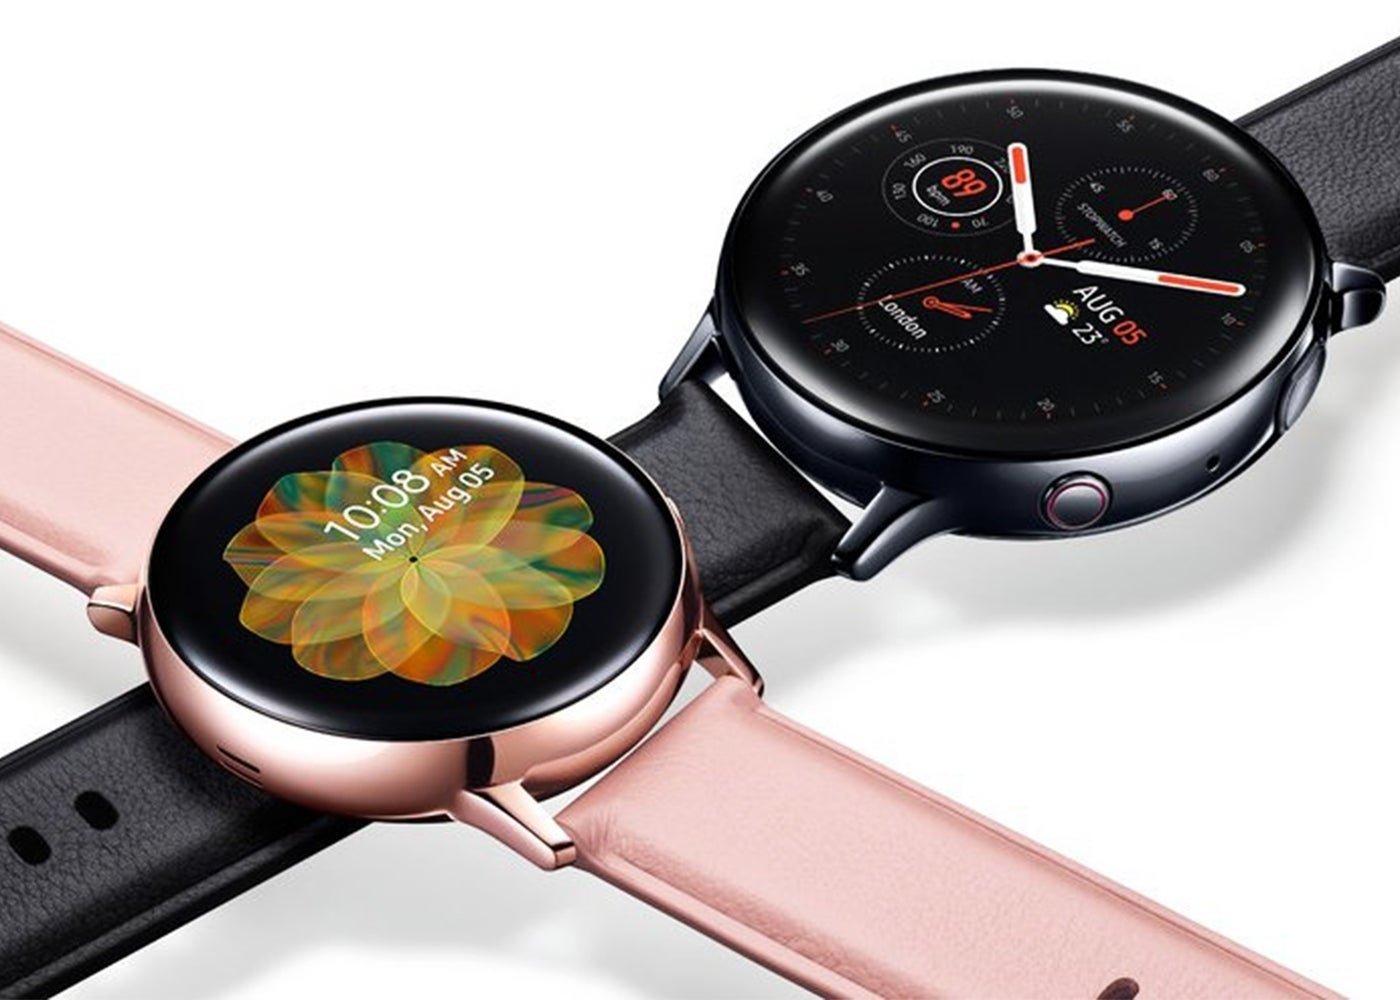 Nuevo Samsung Galaxy Watch Active2: el reloj deportivo de Samsung ahora incluye ECG y bisel táctil